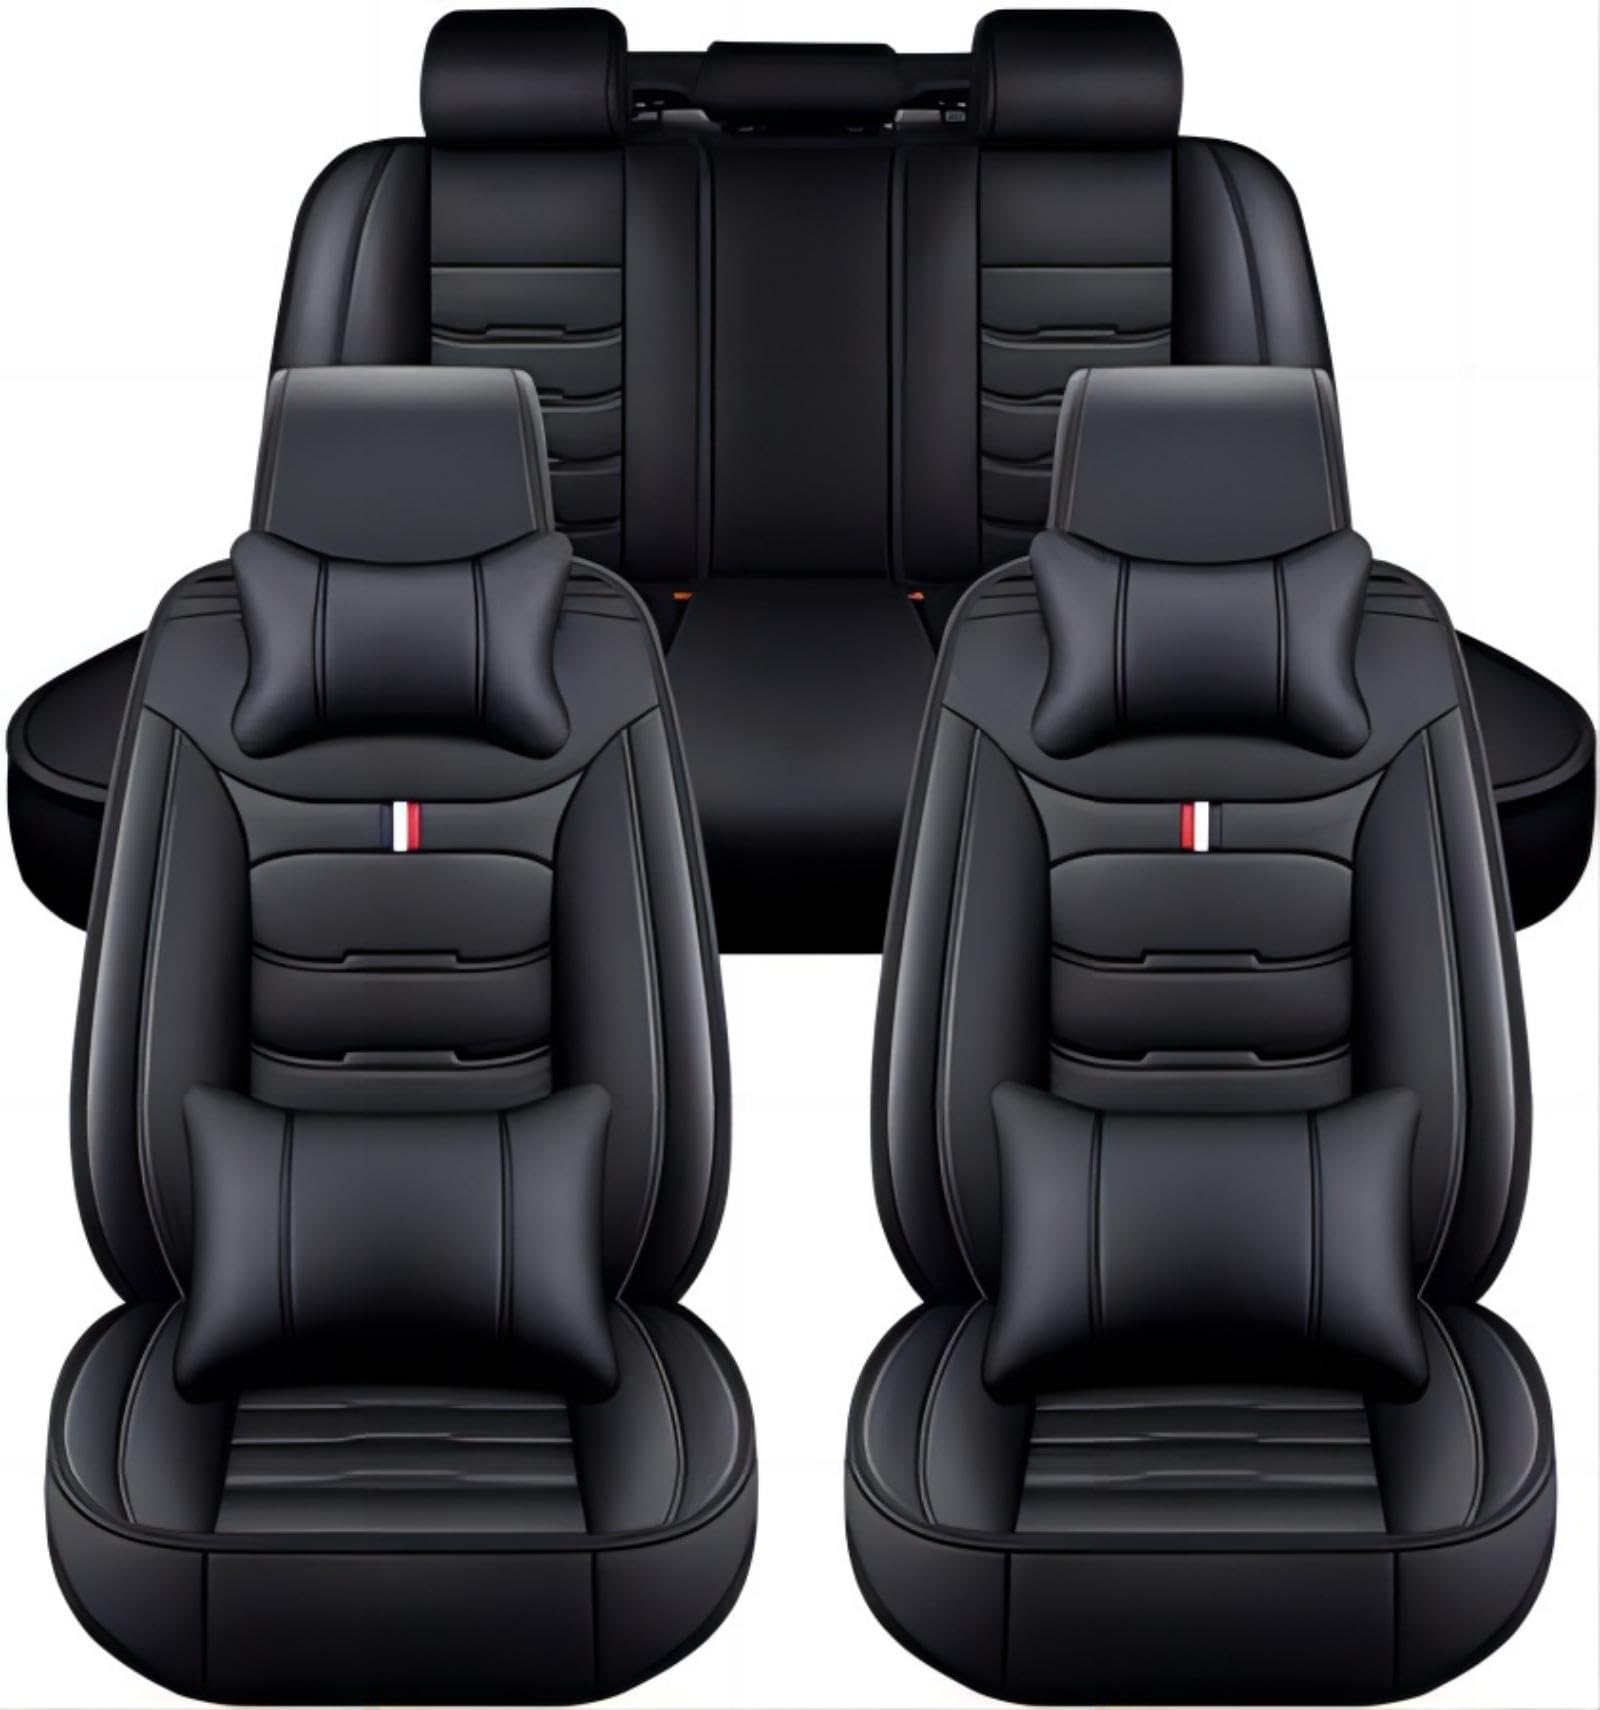 Ruby66 Auto Sitzbezüge Sets für Cadillac XTS 2013 2014 2015 2016 2017 2018, Bequem Wasserdicht rutschfest Sitzschoner, Airbag Kompatibel, Leicht zu Reinigen, Auto Zubehör,A von Ruby66